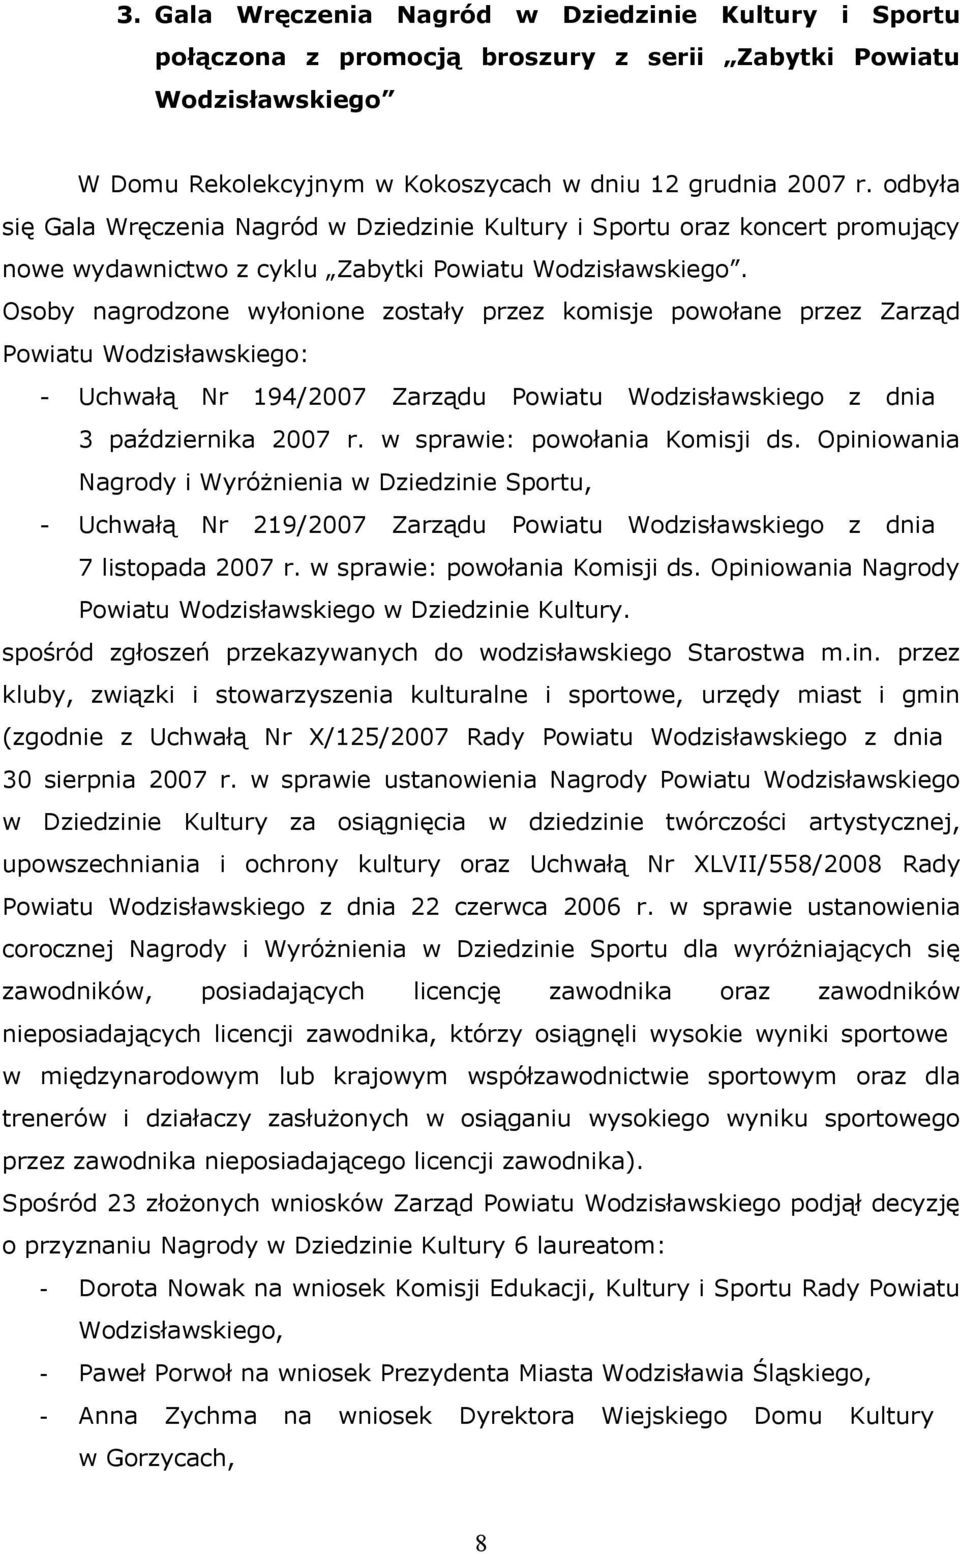 Osoby nagrodzone wyłonione zostały przez komisje powołane przez Zarząd Powiatu Wodzisławskiego: - Uchwałą Nr 194/2007 Zarządu Powiatu Wodzisławskiego z dnia 3 października 2007 r.